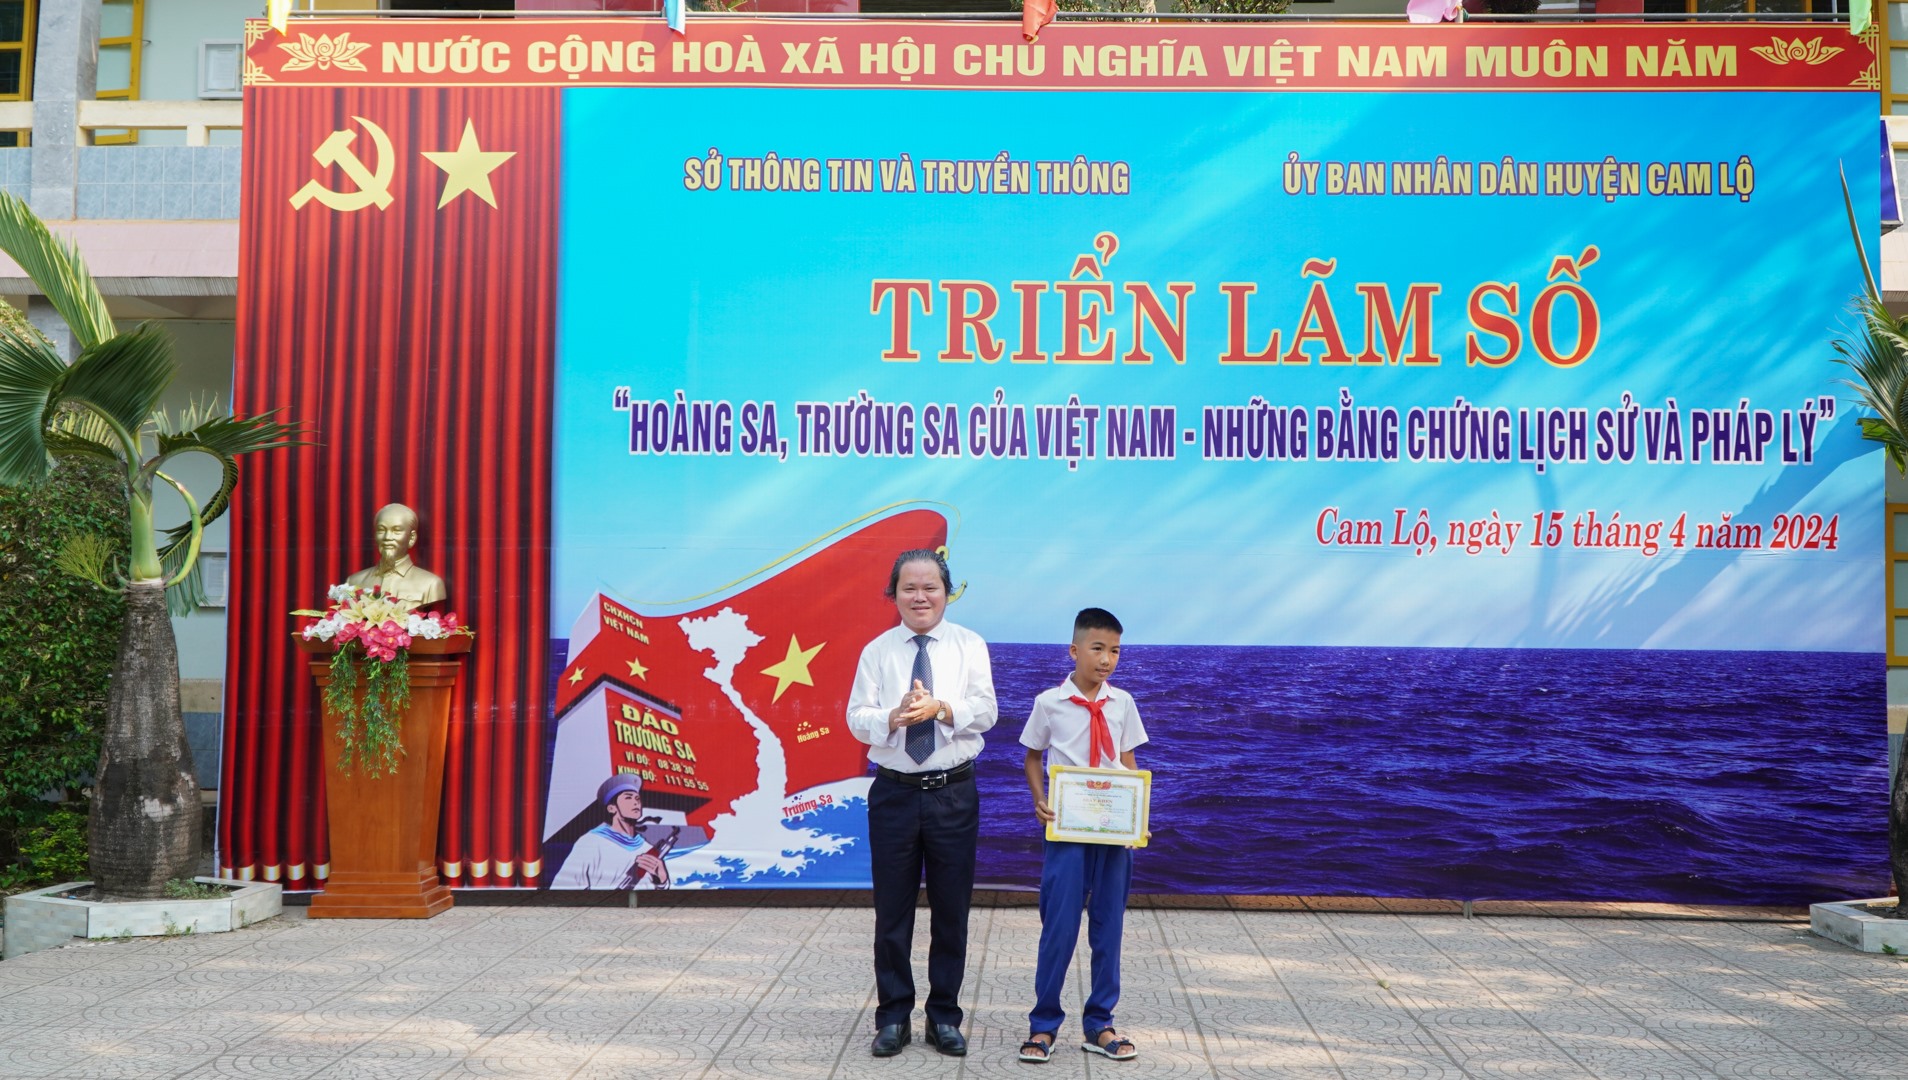 Lãnh đạo Sở TT&TT trao giải nhất Cuộc thi trực tuyến “Tìm hiểu về biển, đảo Việt Nam” cho em Nguyễn Đức Huy, lớp 7A, Trường Tiểu học và THCS Cam Nghĩa - Ảnh: Lê Trường